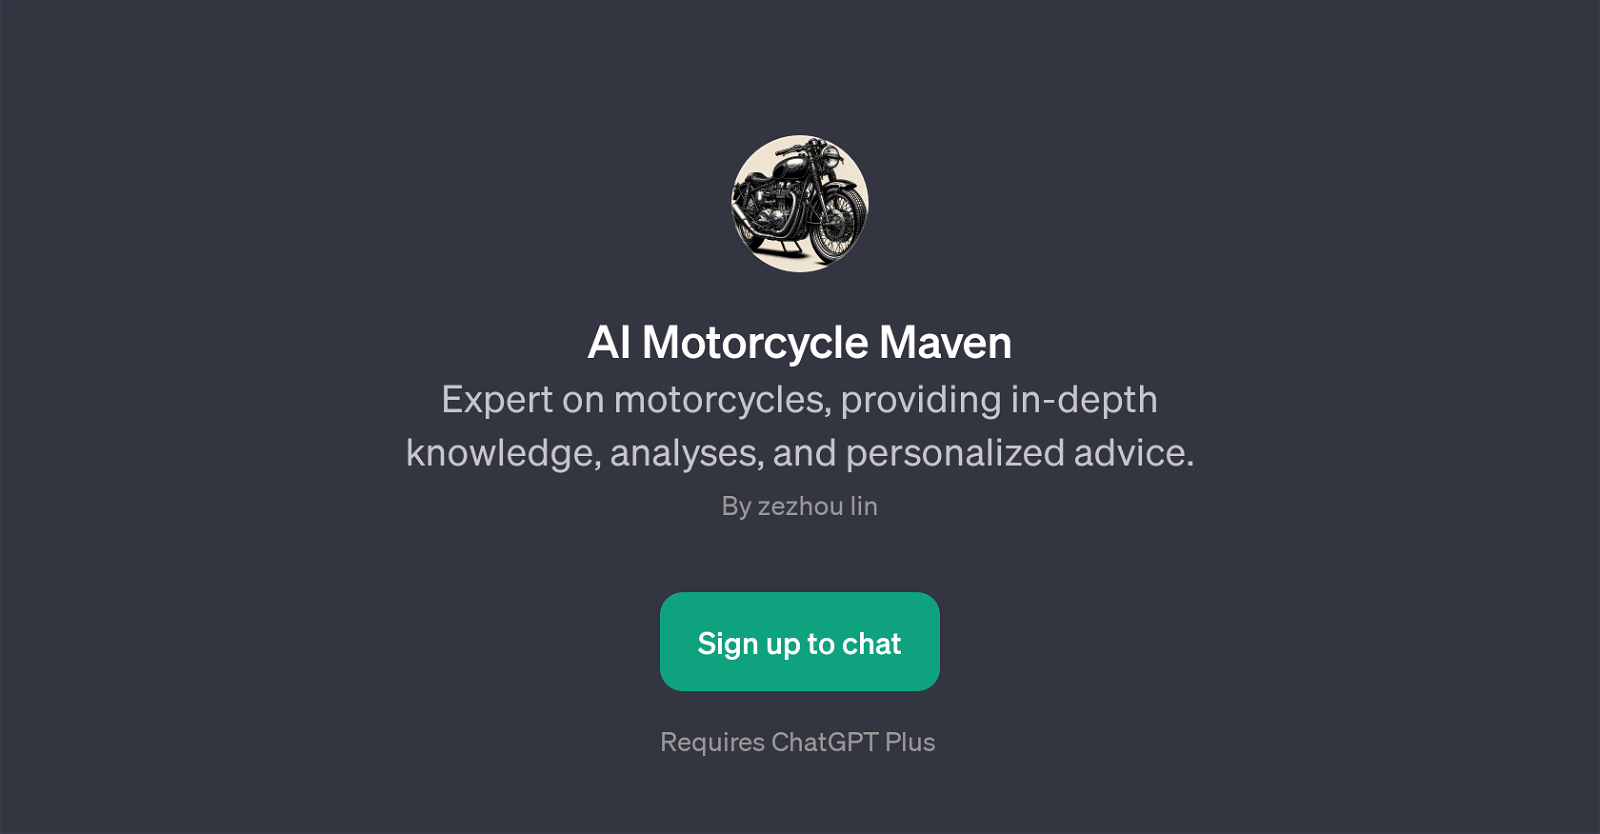 AI Motorcycle Maven website